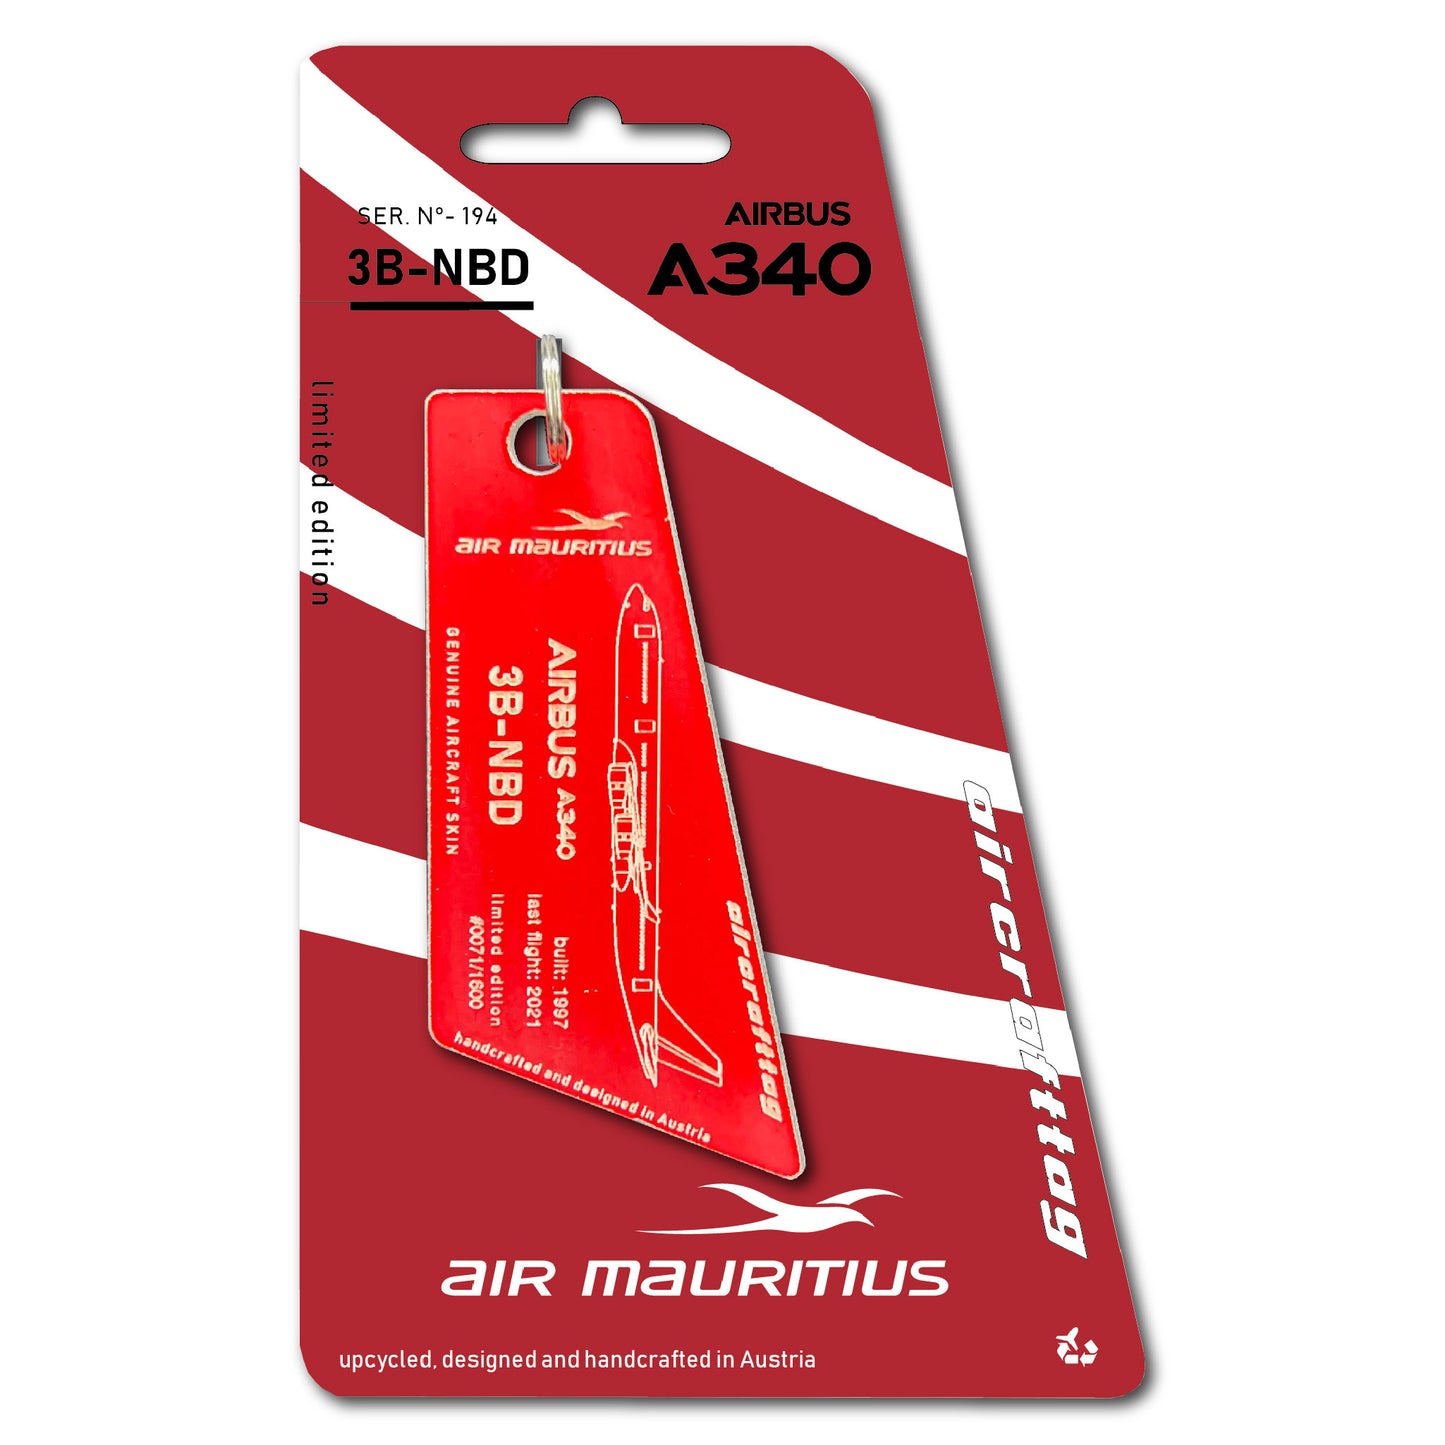 Airbus A340 - Air Mauritius - 3B-NBD